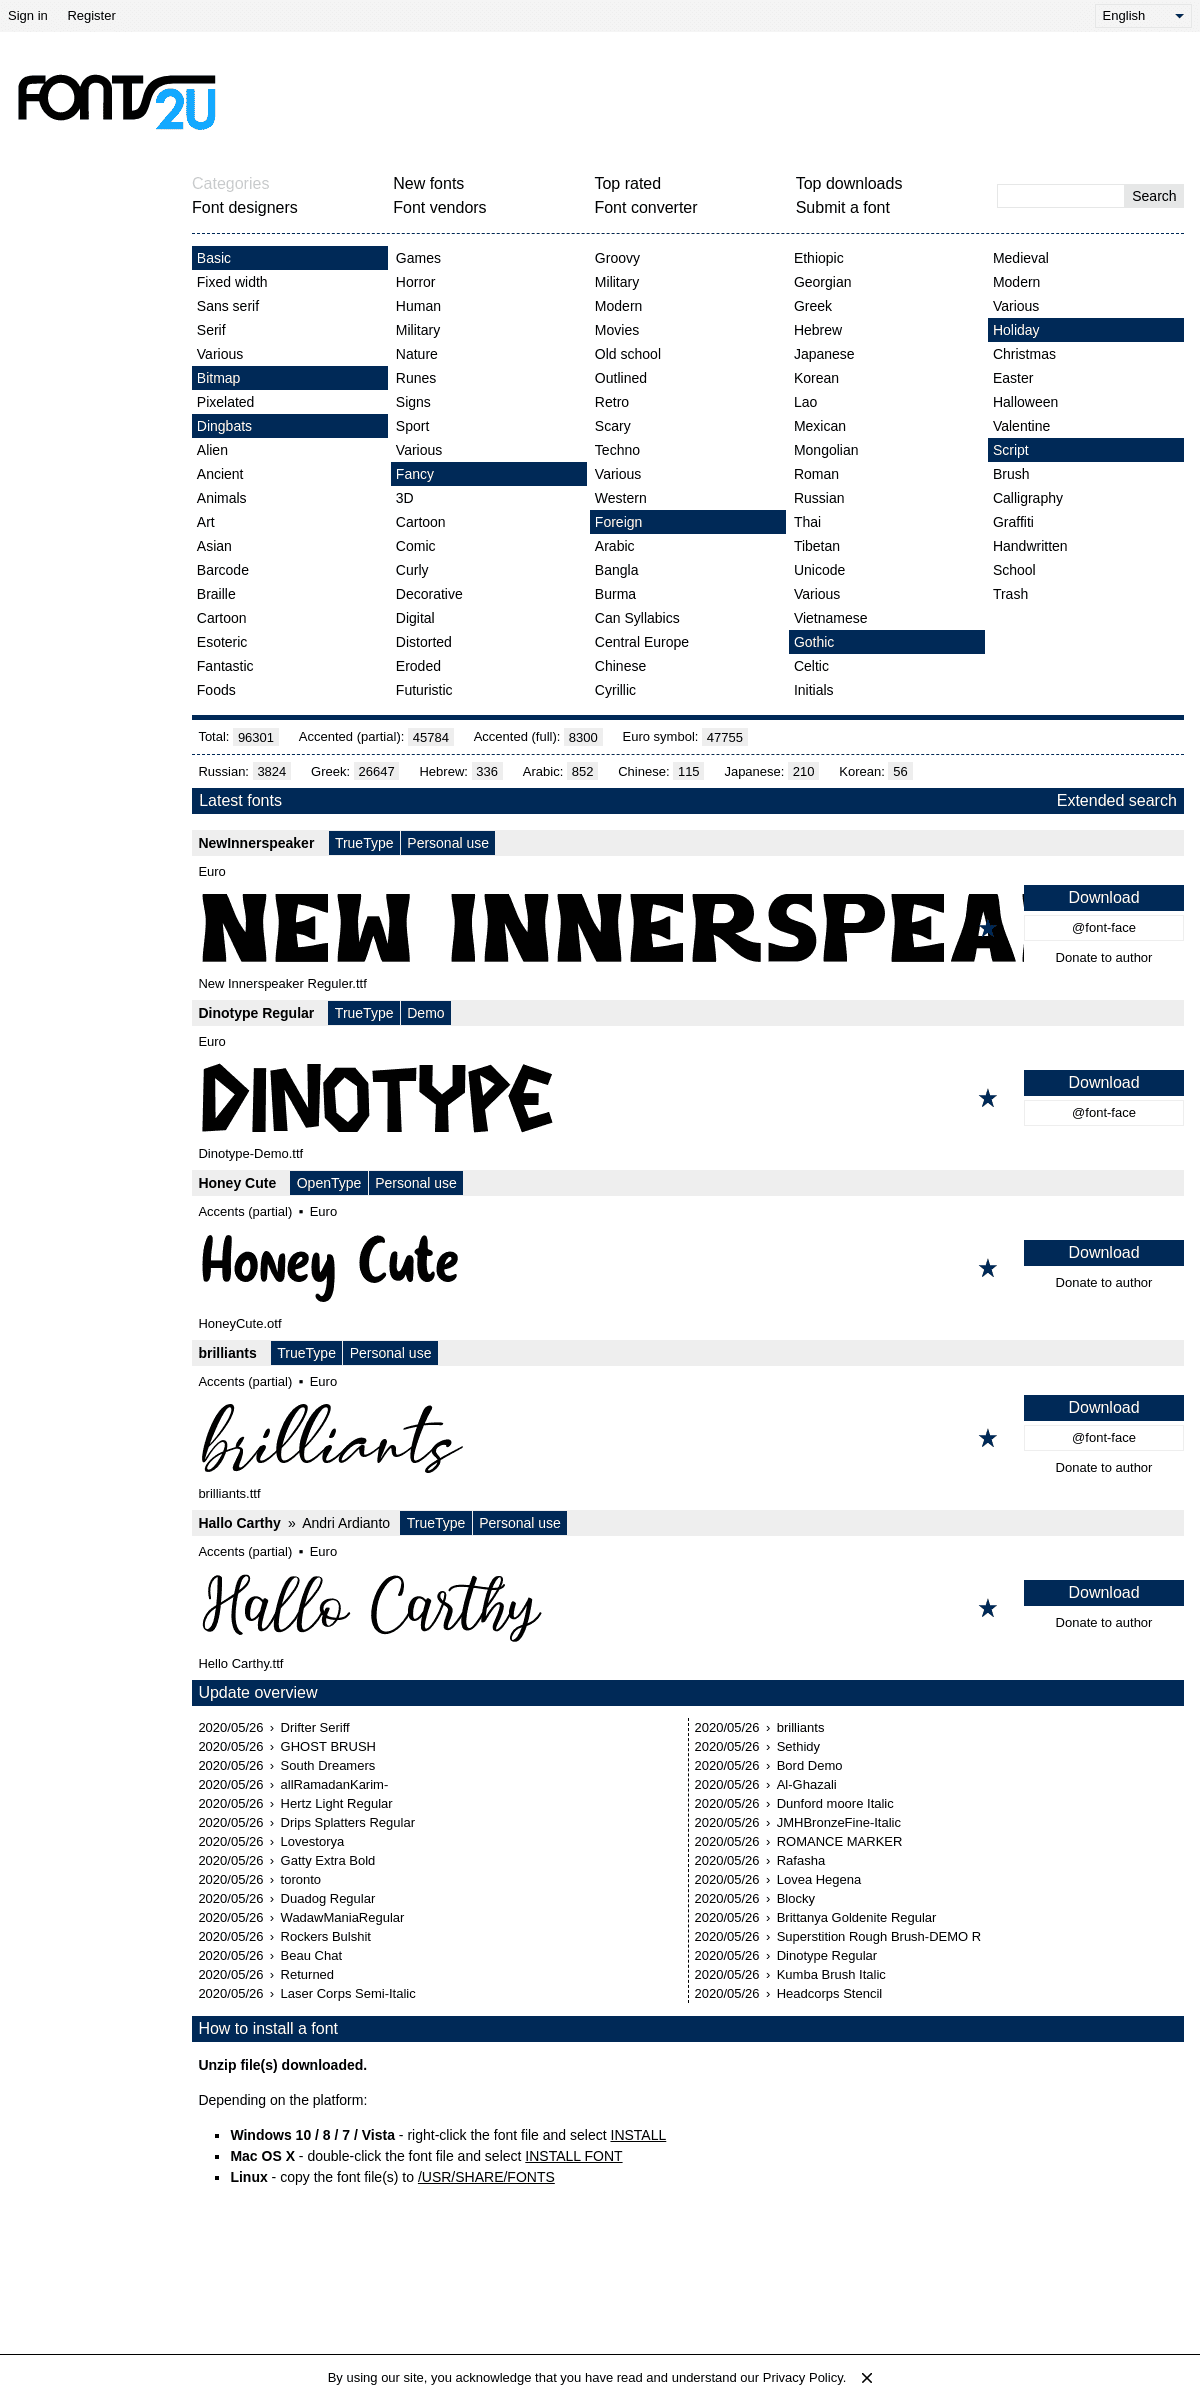 A complete backup of fonts2u.com